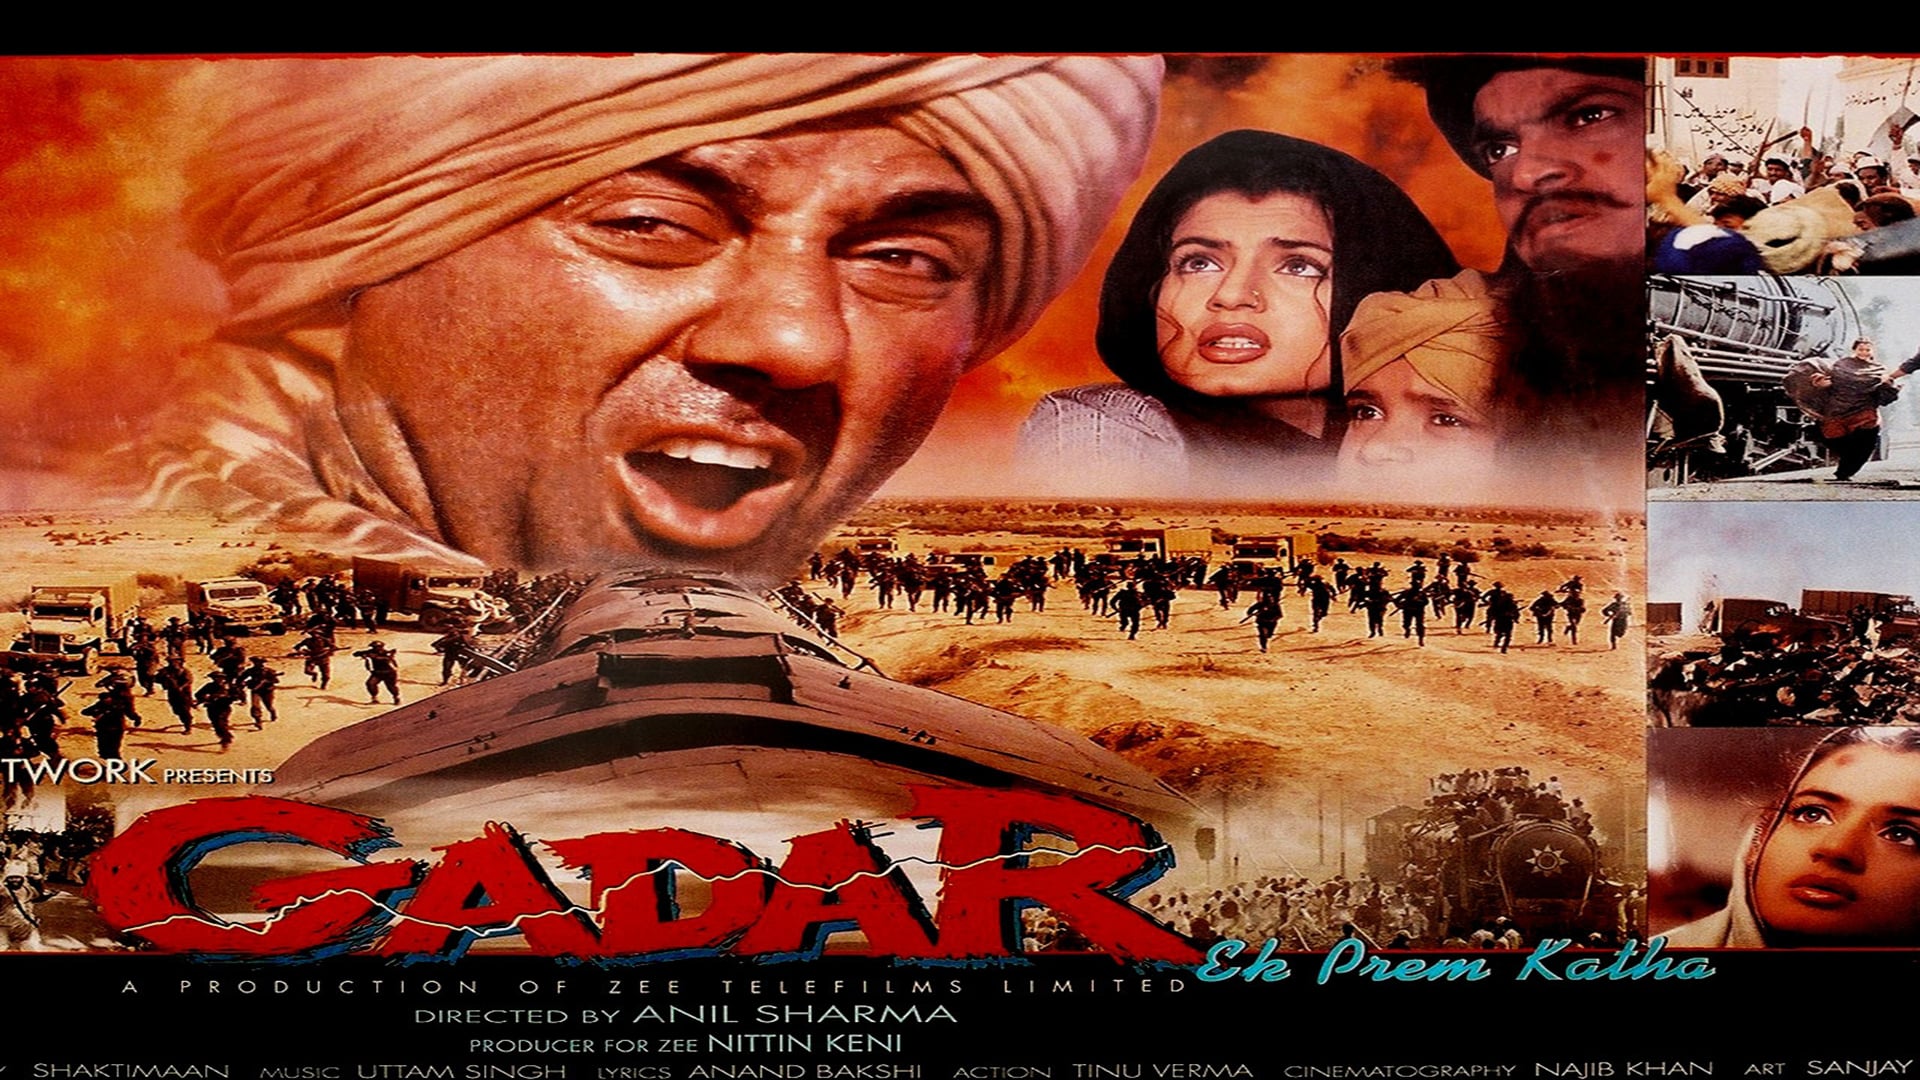 Ek Prem Katha - Gadar Prem Katha 2001 , HD Wallpaper & Backgrounds